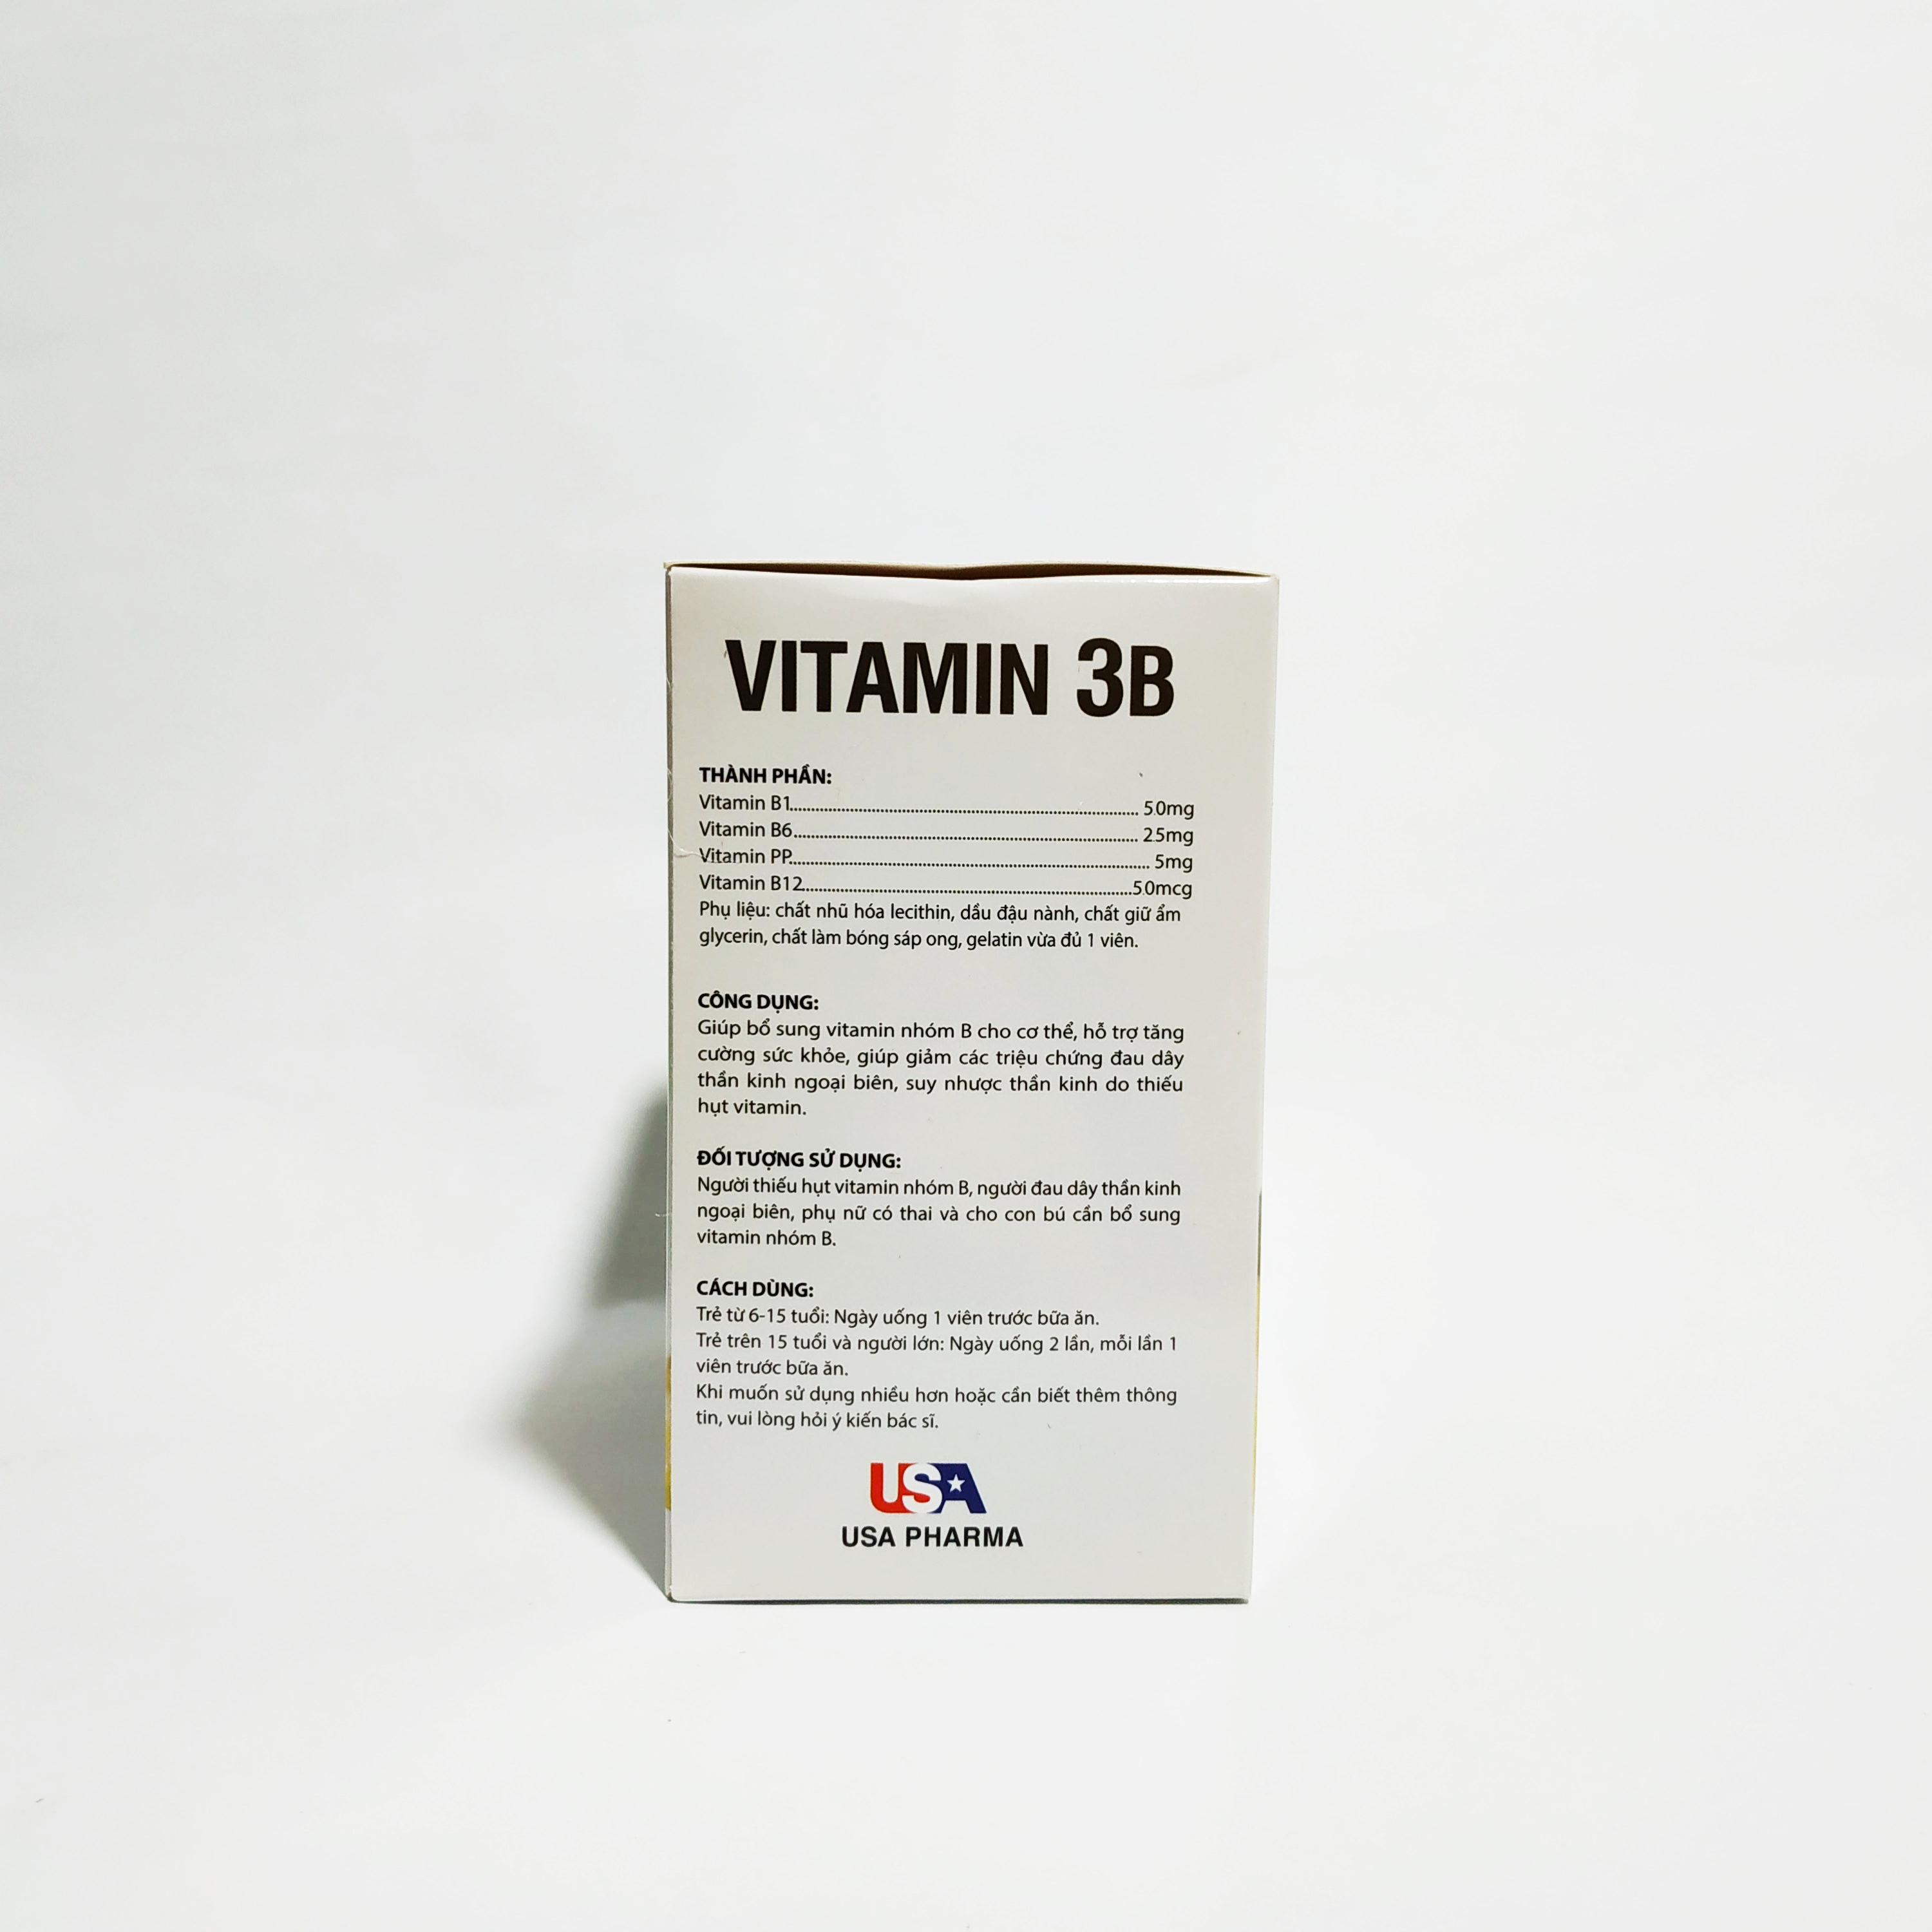 Vitamin 3B Nguyên Liệu Nhập Khẩu Mỹ - Bổ Sung Các Vitamin Nhóm B - Bồi Bổ Sức Khỏe - Giảm Đau Dây Thần Kinh - Hộp 100 Viên